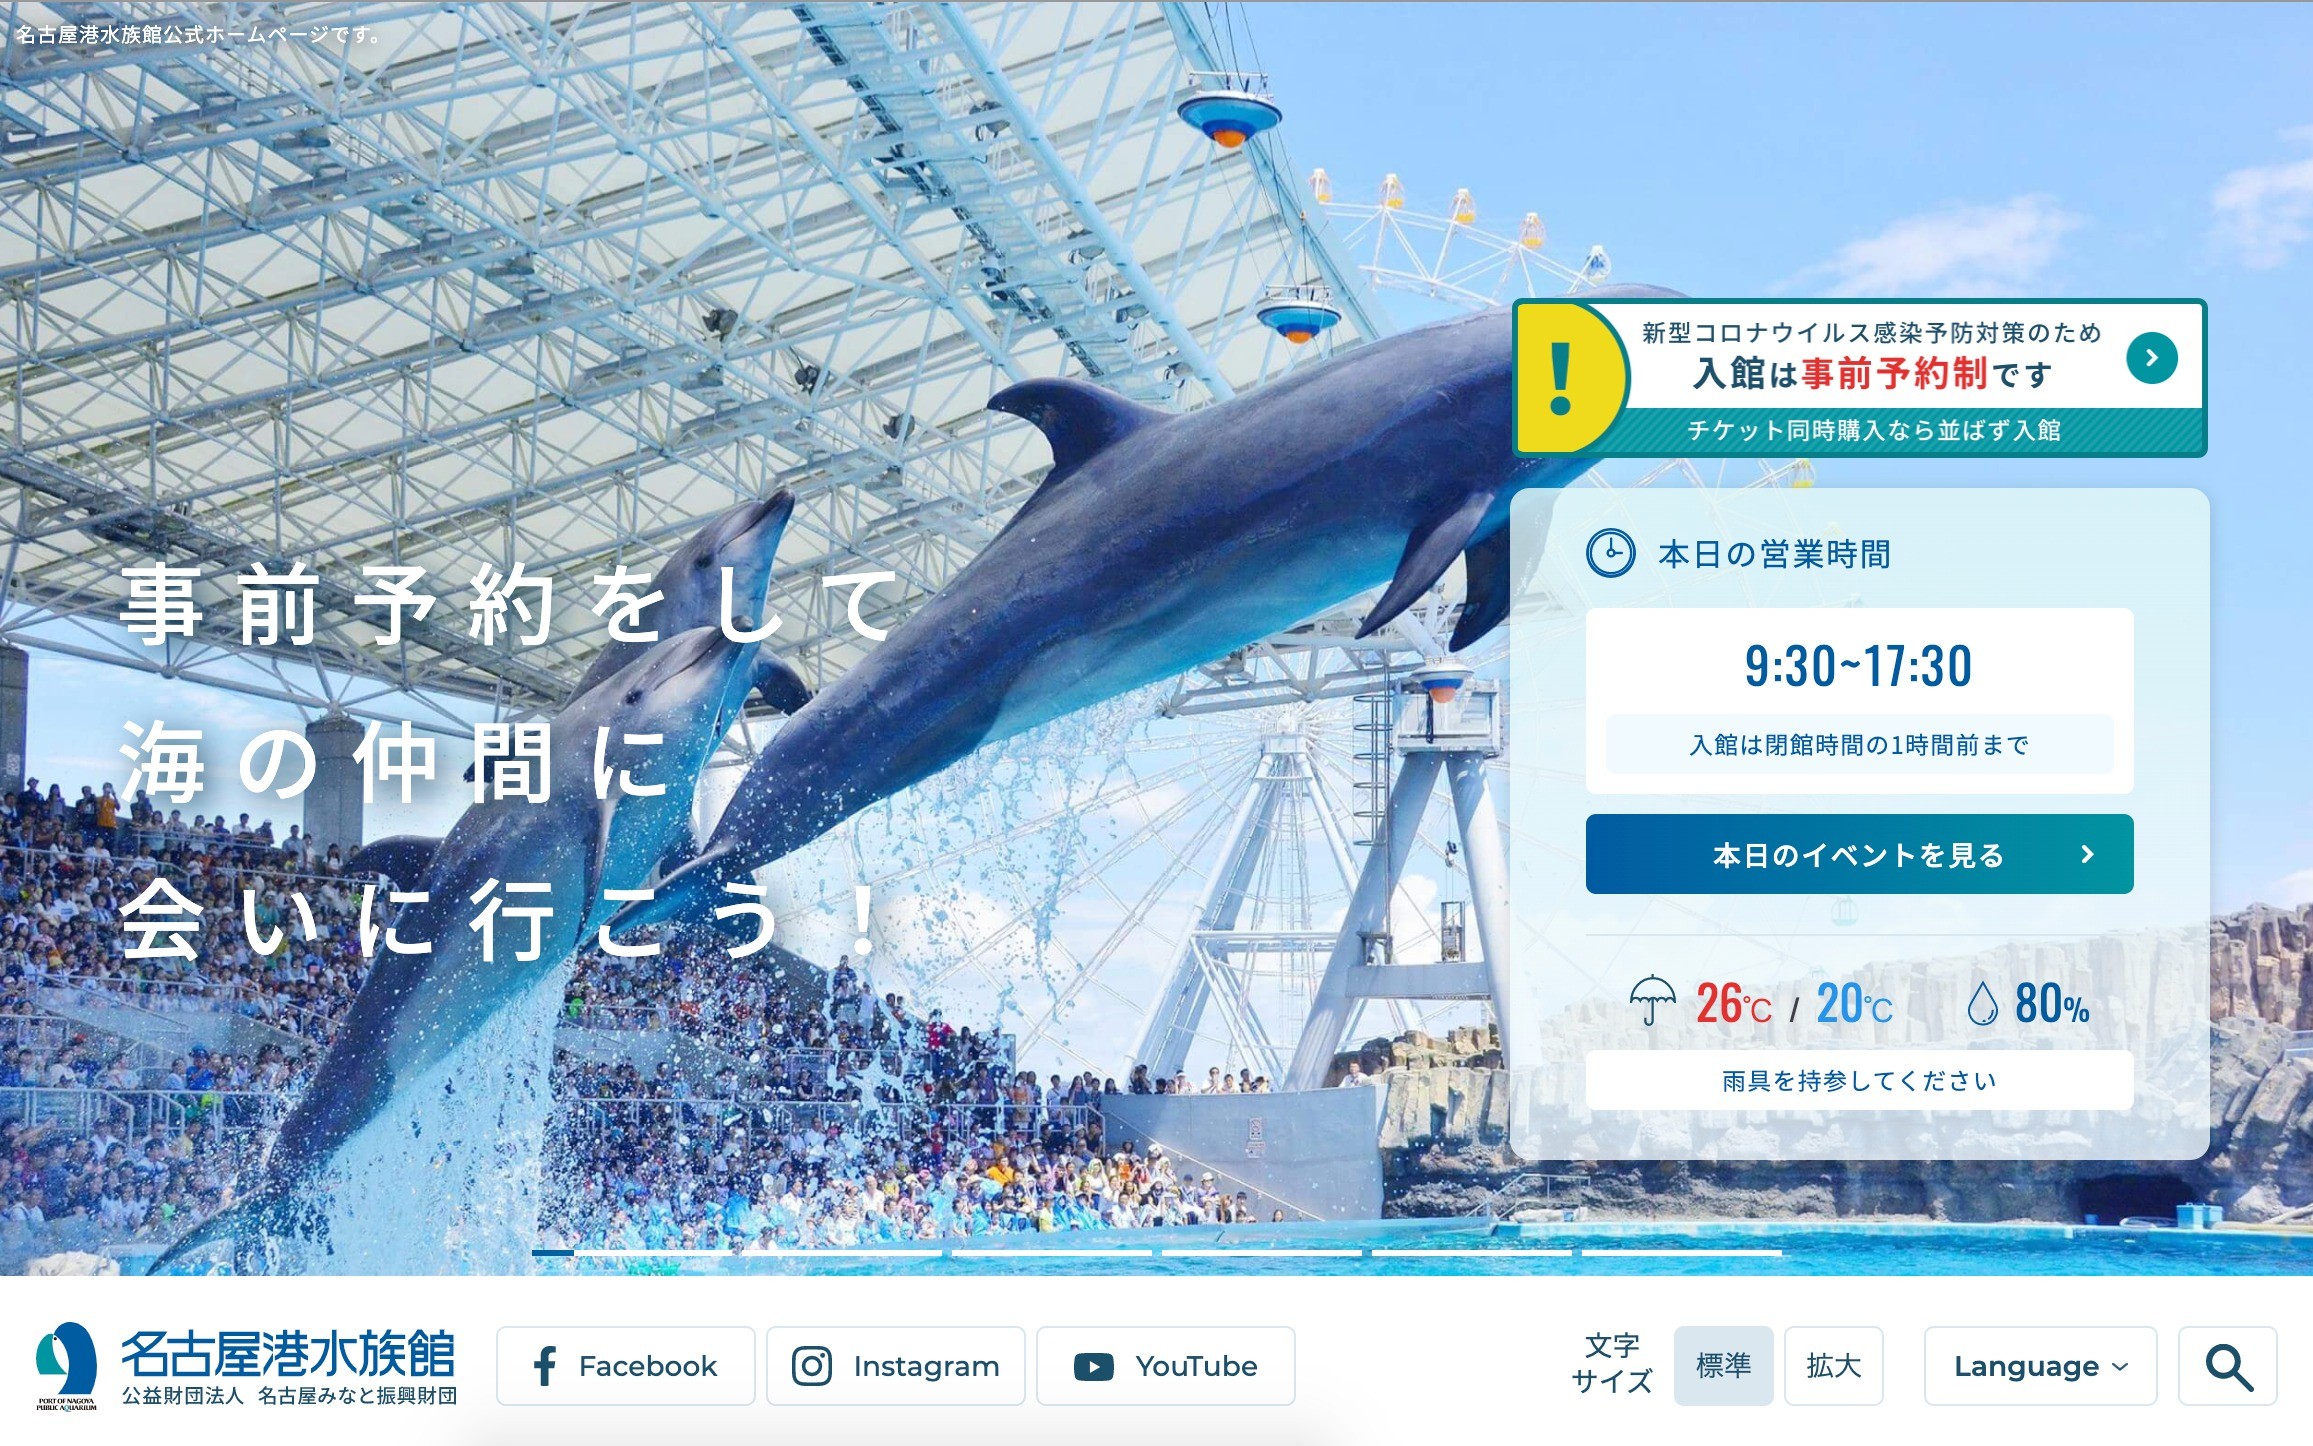 名古屋港水族館 | Web制作・ホームページ制作実績 | Web幹事